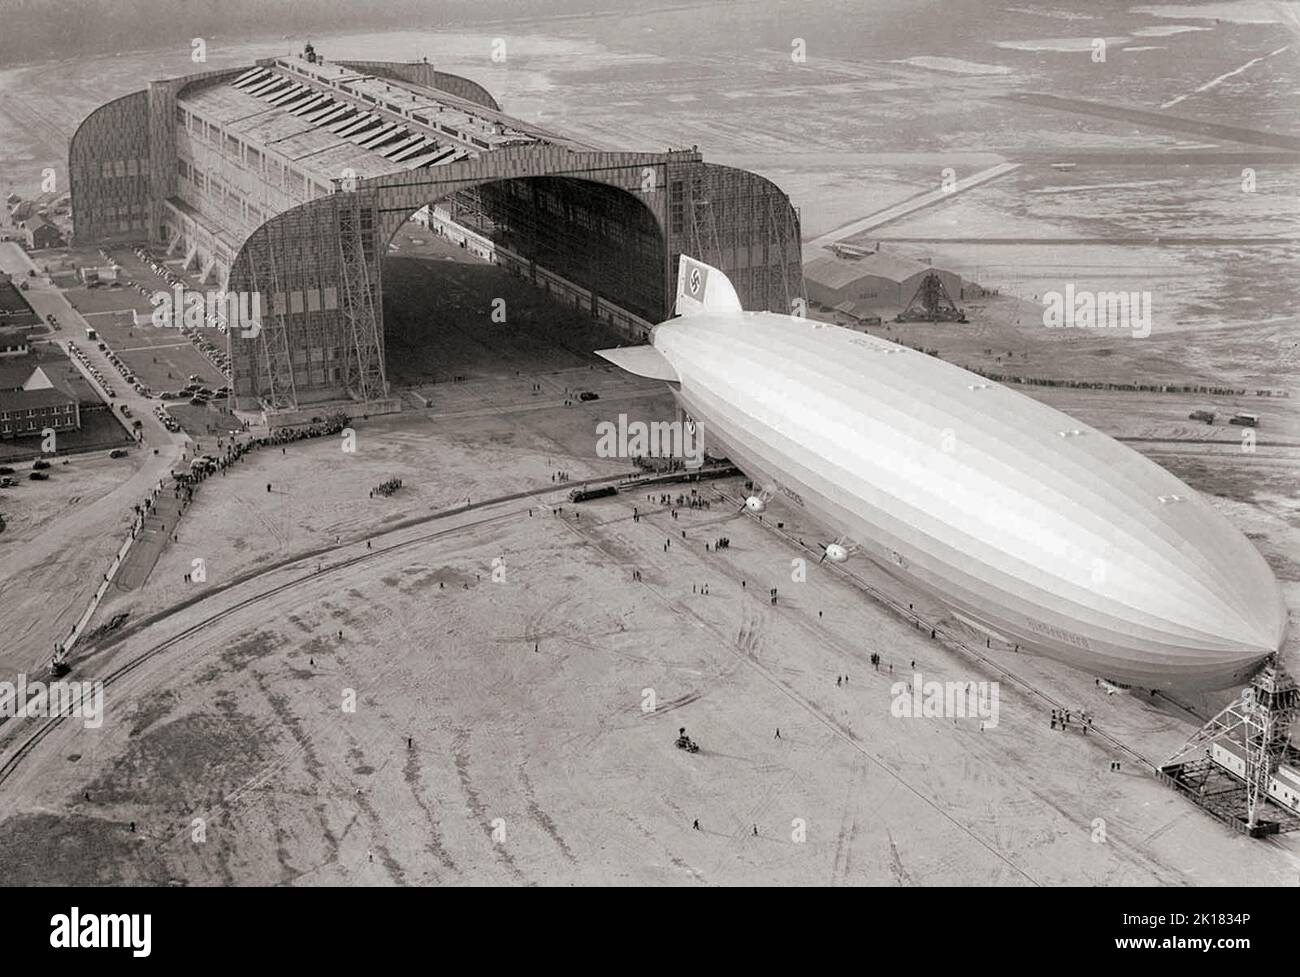 Ein in Deutschland erbauter Zeppelin Hindenburg, der am 9. Mai 1936 in den Hangar der US-Marine eindringt, dessen Nase an den beweglichen Ankerturm in Lakehurst, New Jersey, angespannt ist. Das starre Luftschiff hatte gerade einen Rekord für seine erste Nordatlantiküberquerung aufgestellt, die erste Etappe von zehn geplanten Rundfahrten zwischen Deutschland und Amerika. Stockfoto